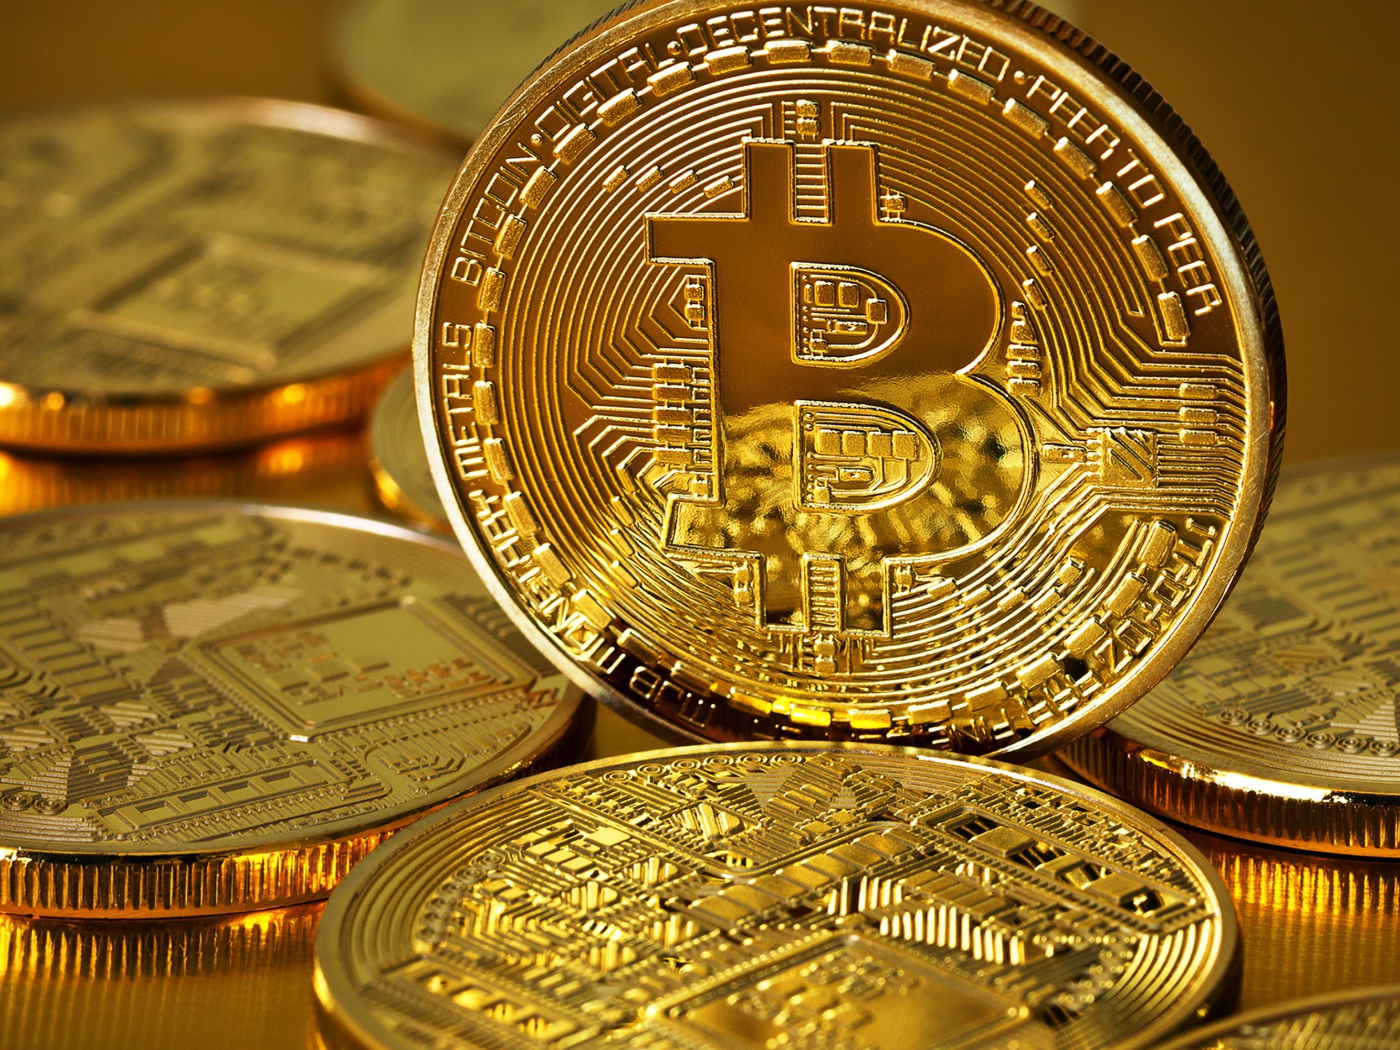 Big bitcoin coin close up